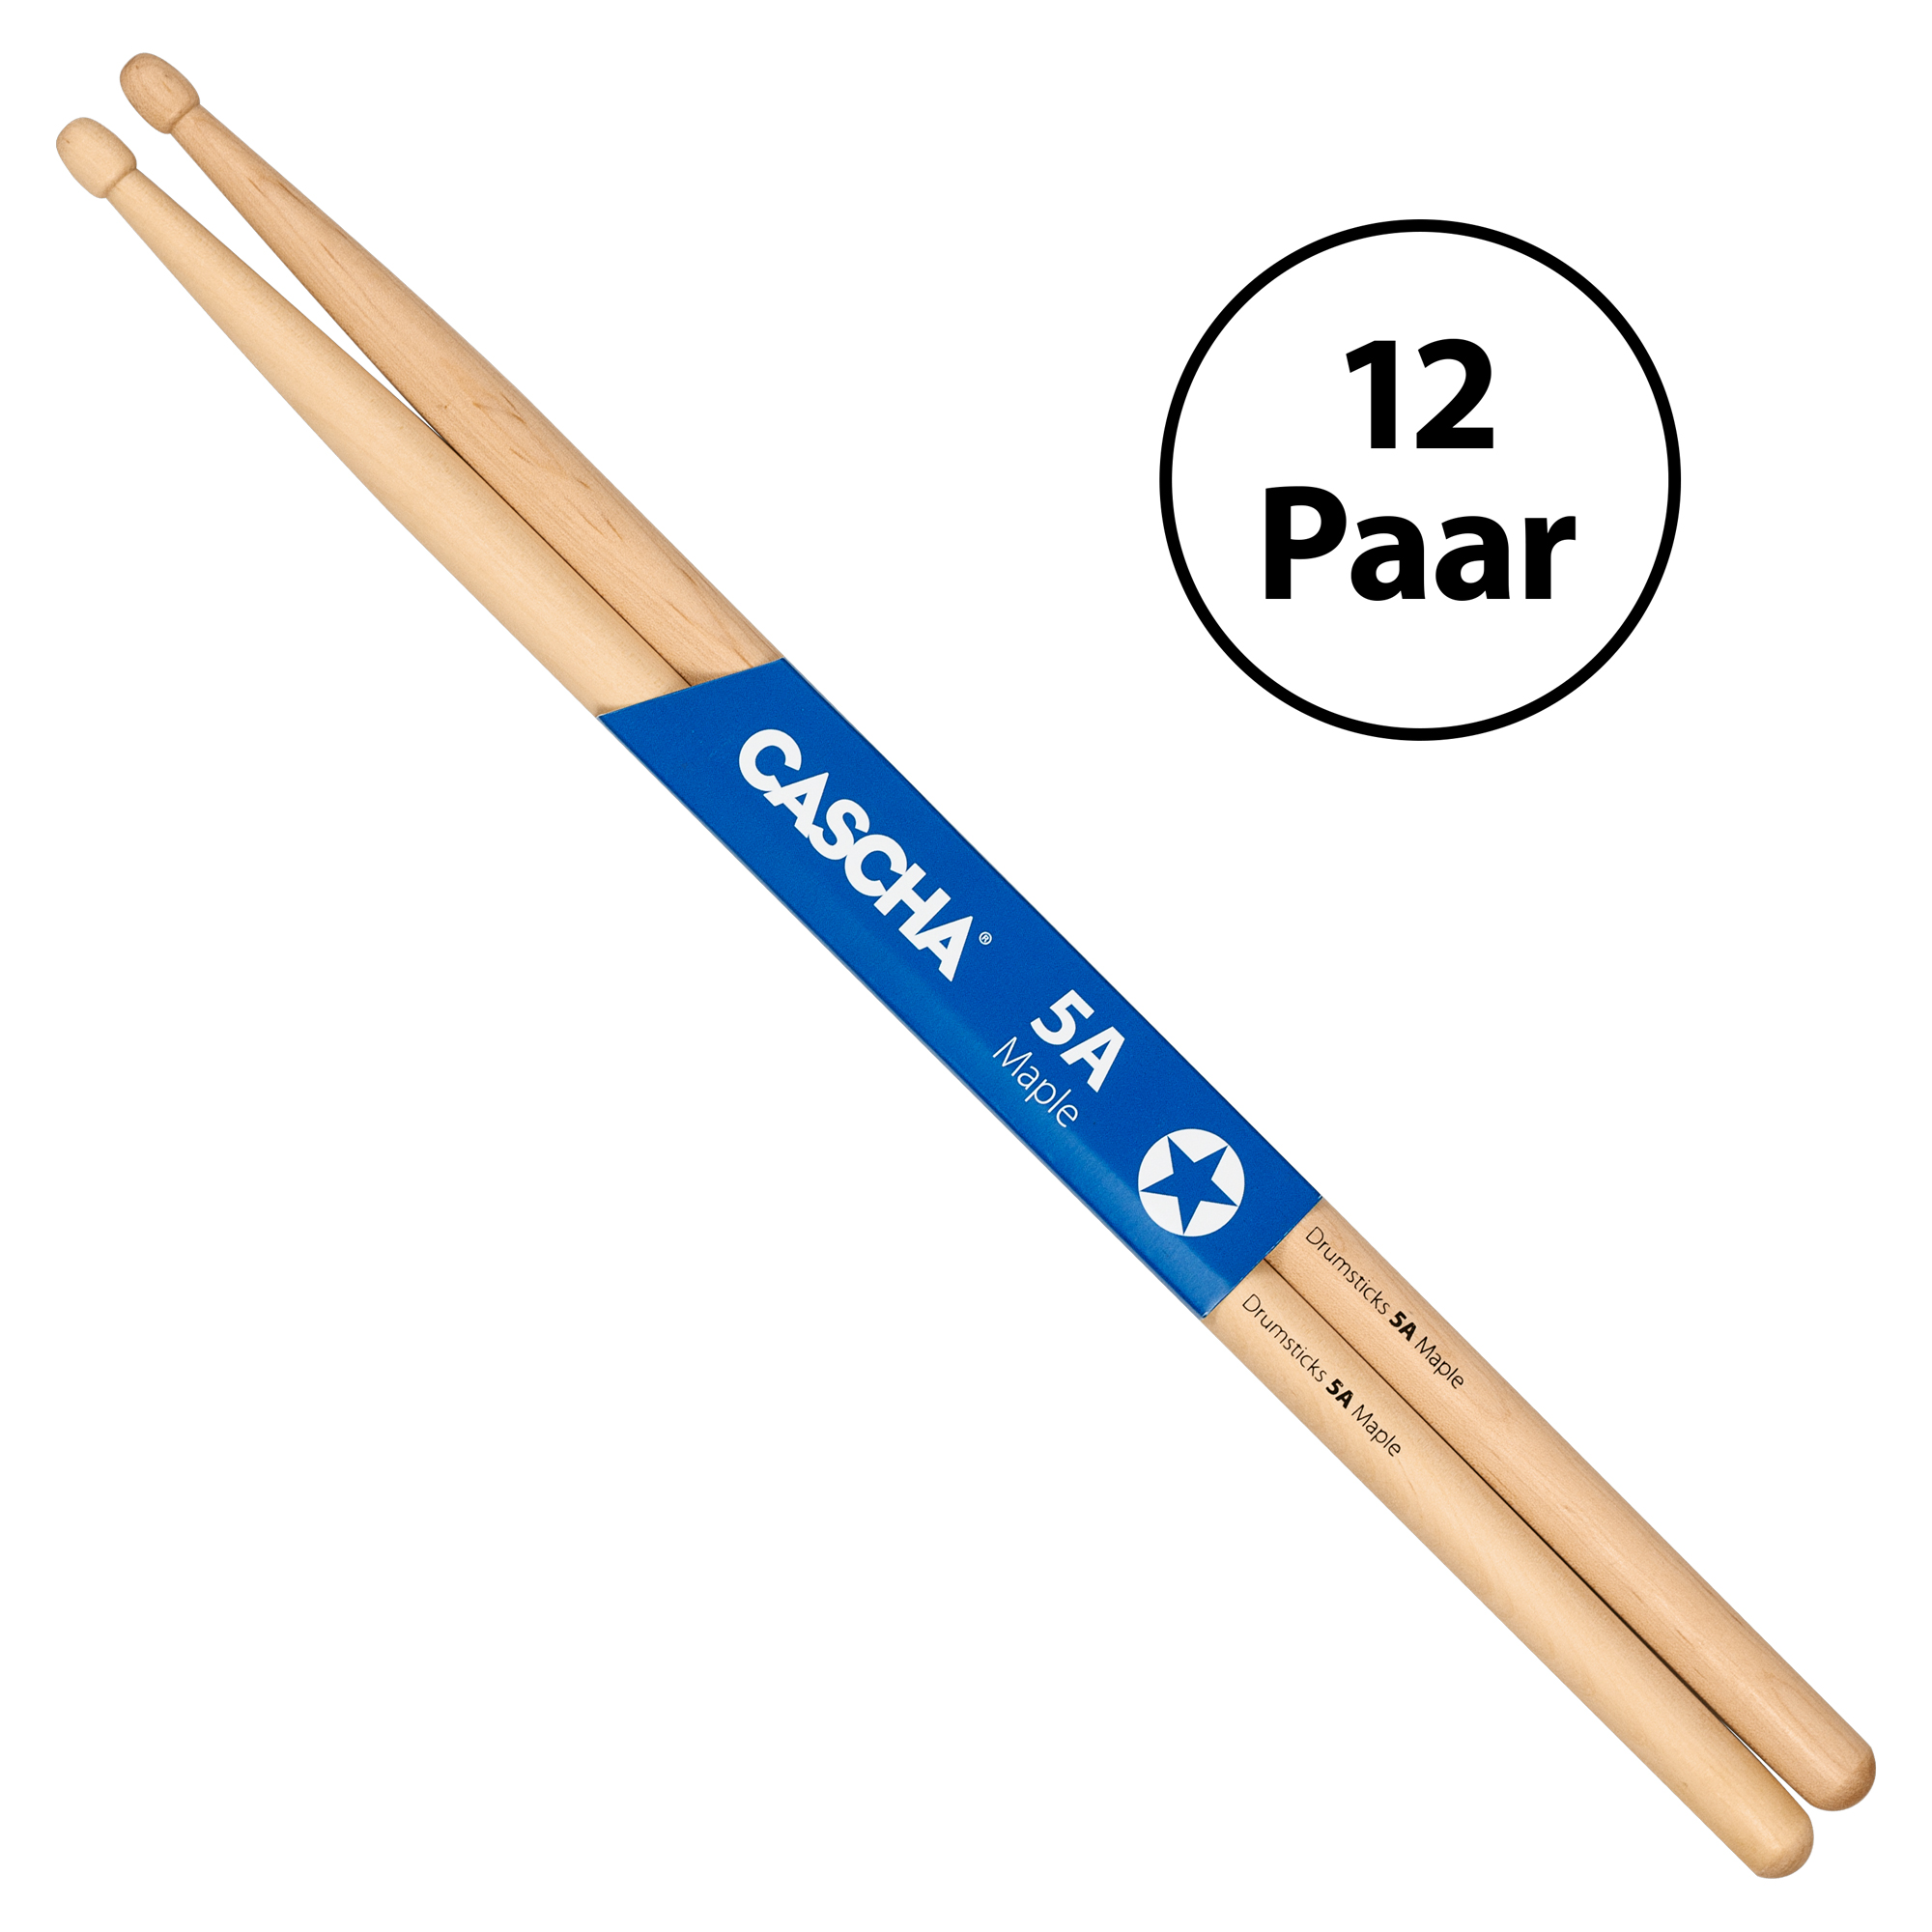 Drumsticks 5a Ahorn Trommelstöcke Holz Schlagzeug Stick für Üben Performance 